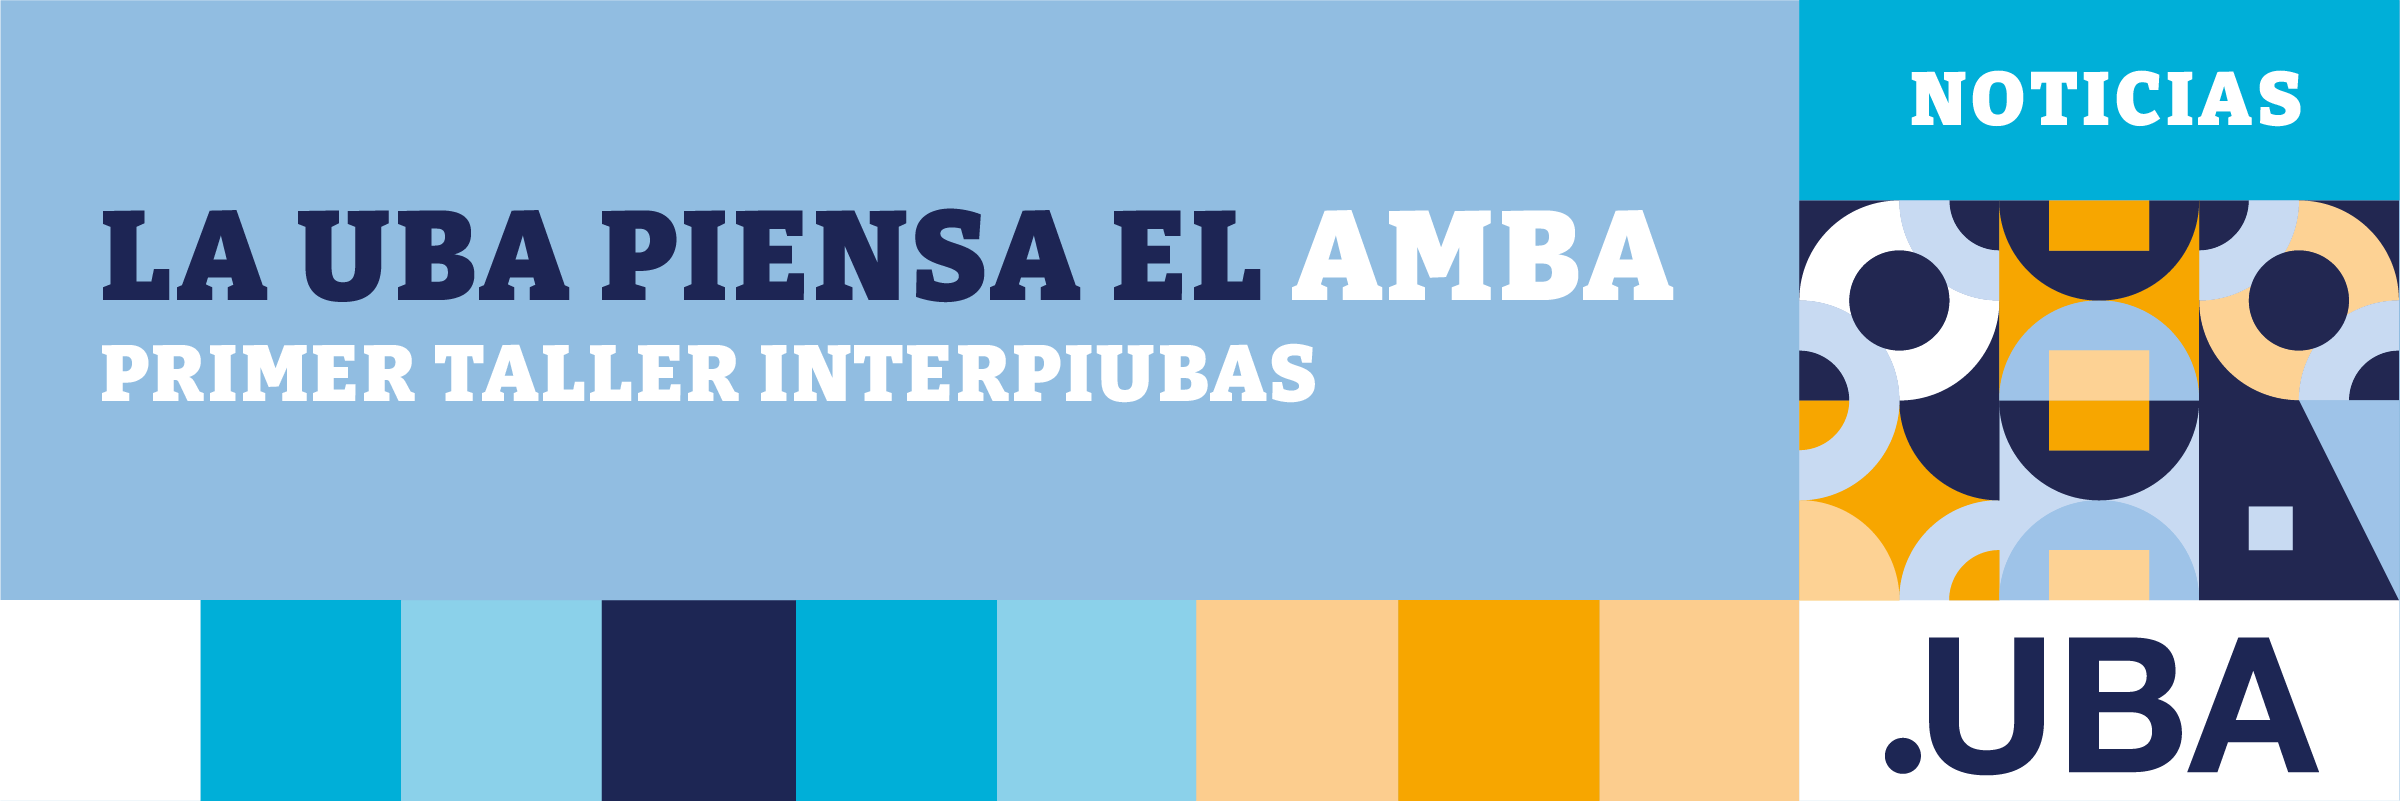 La UBA piensa el AMBA - Primer Taller INTERPIUBAS